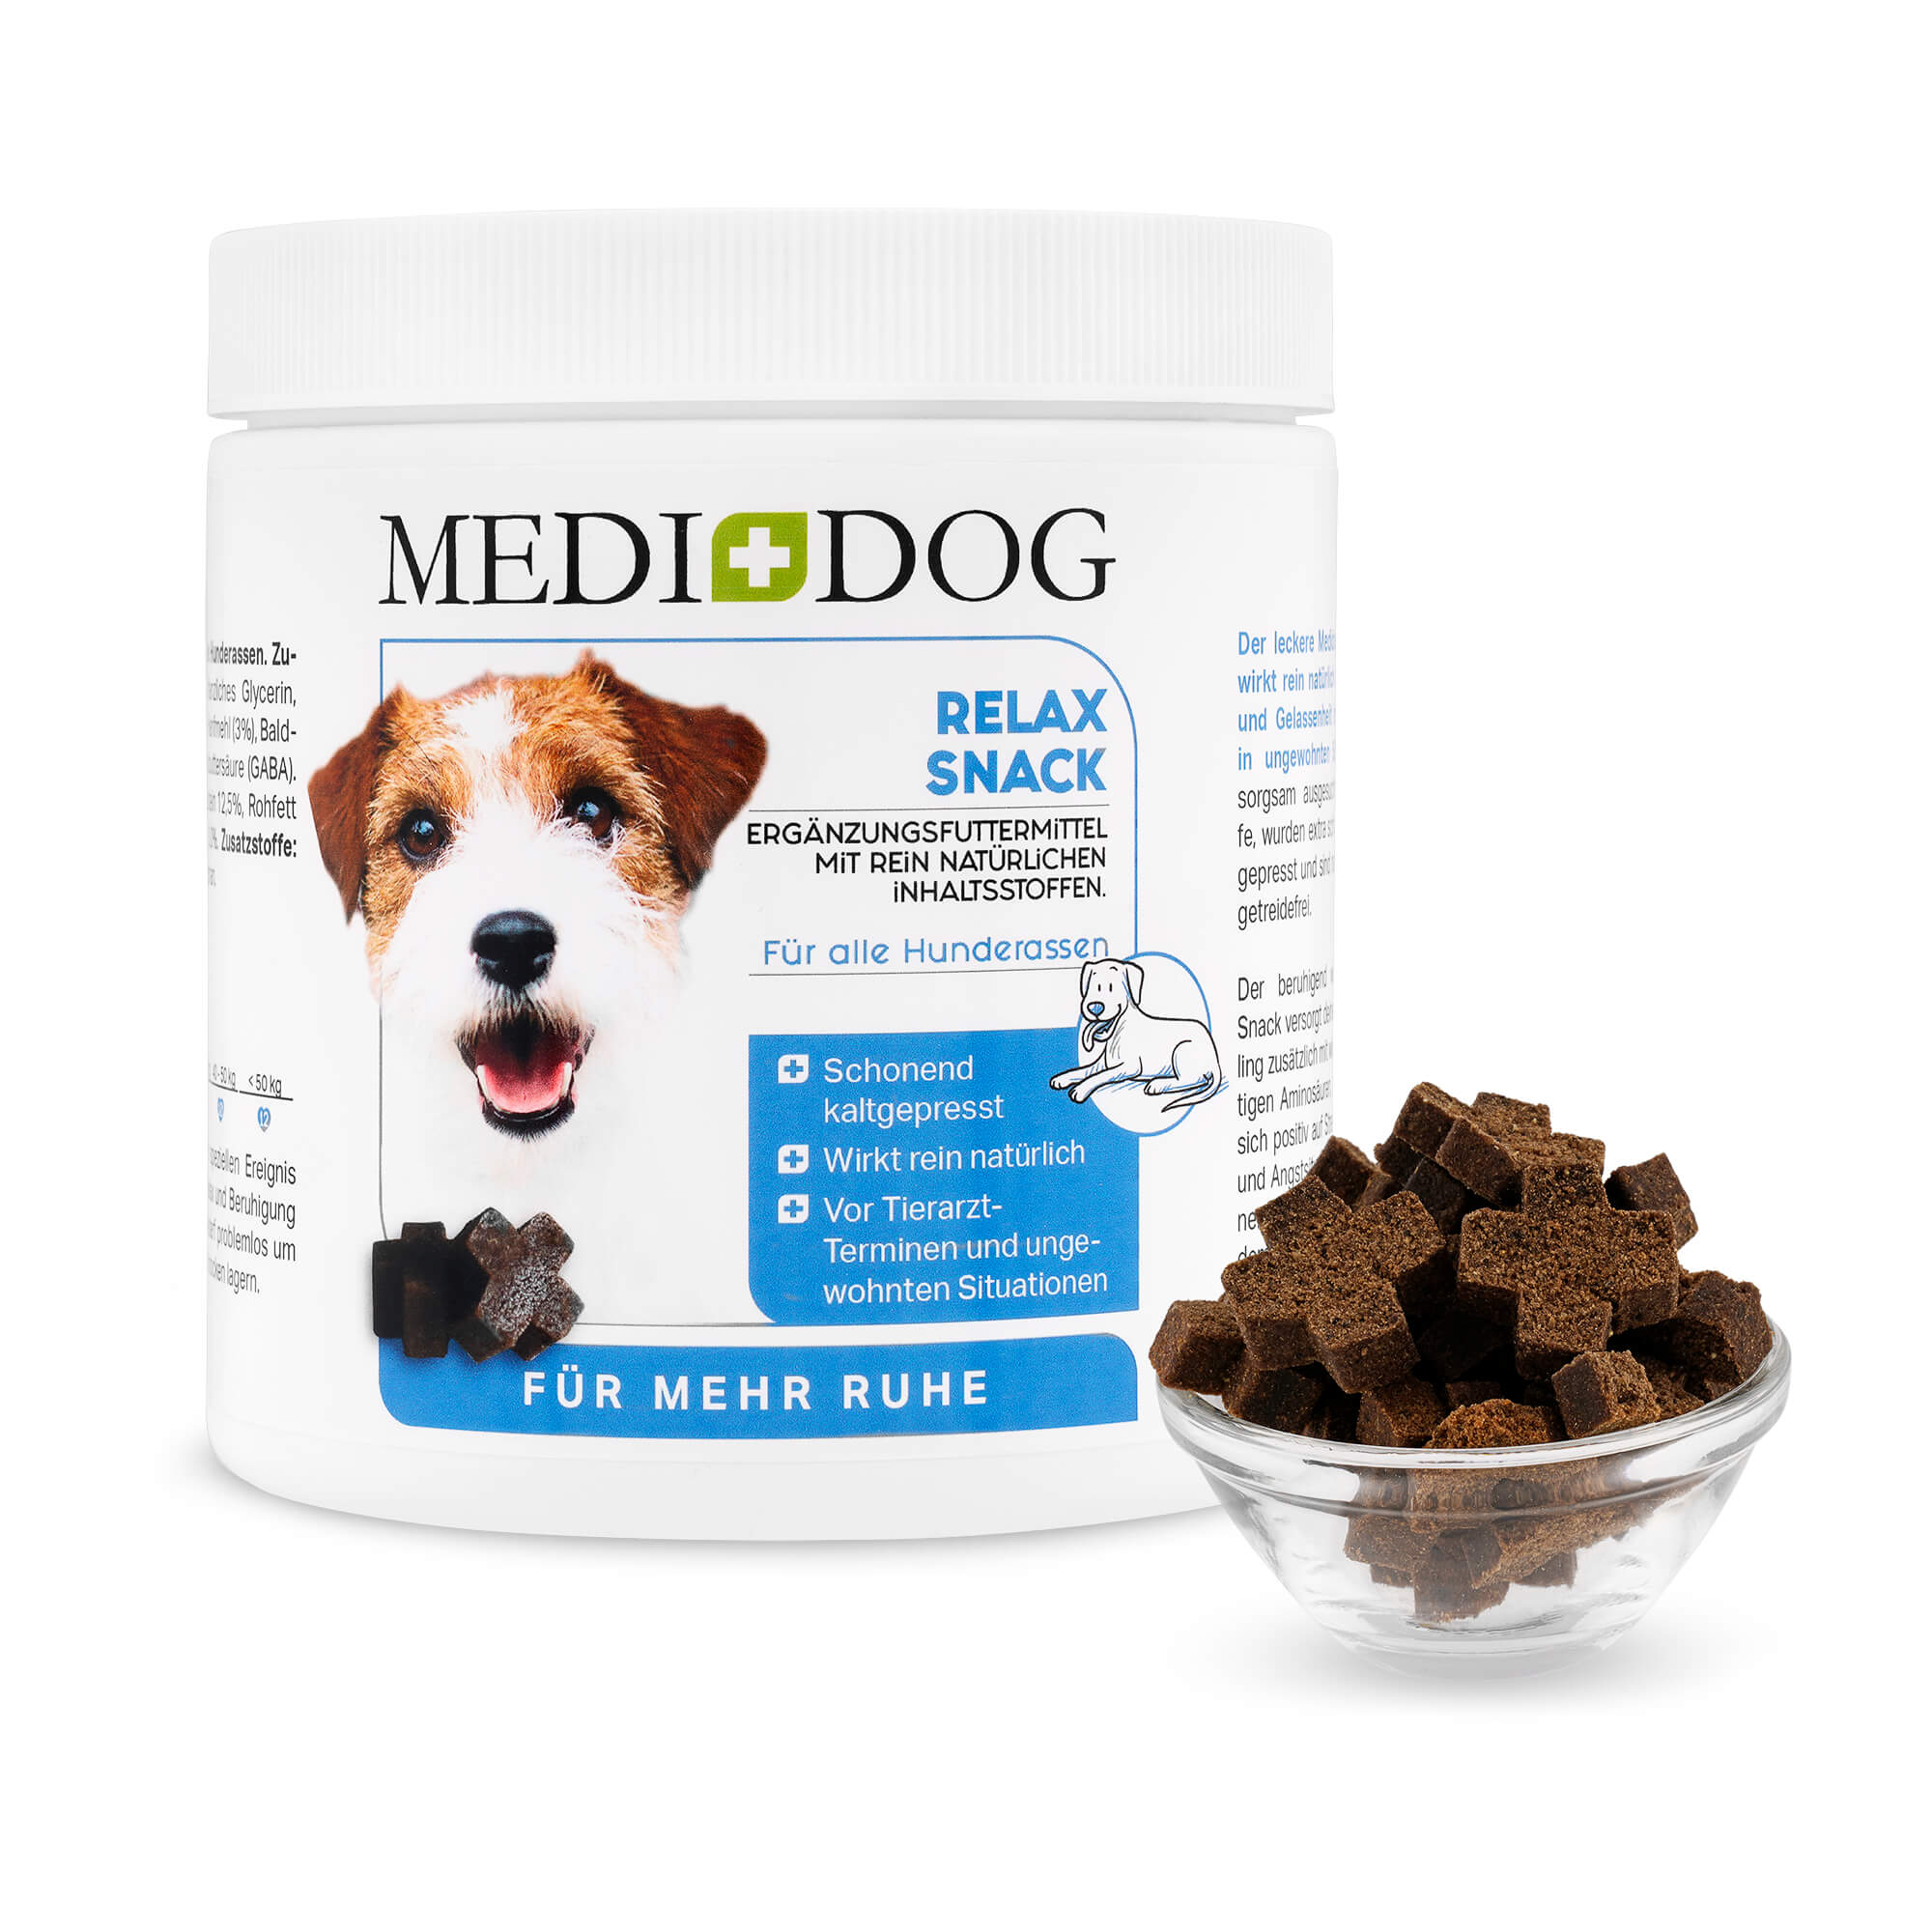 Medidog Relax Snack - natürliches Schutzschild gegen Angst und Stress im Alltag